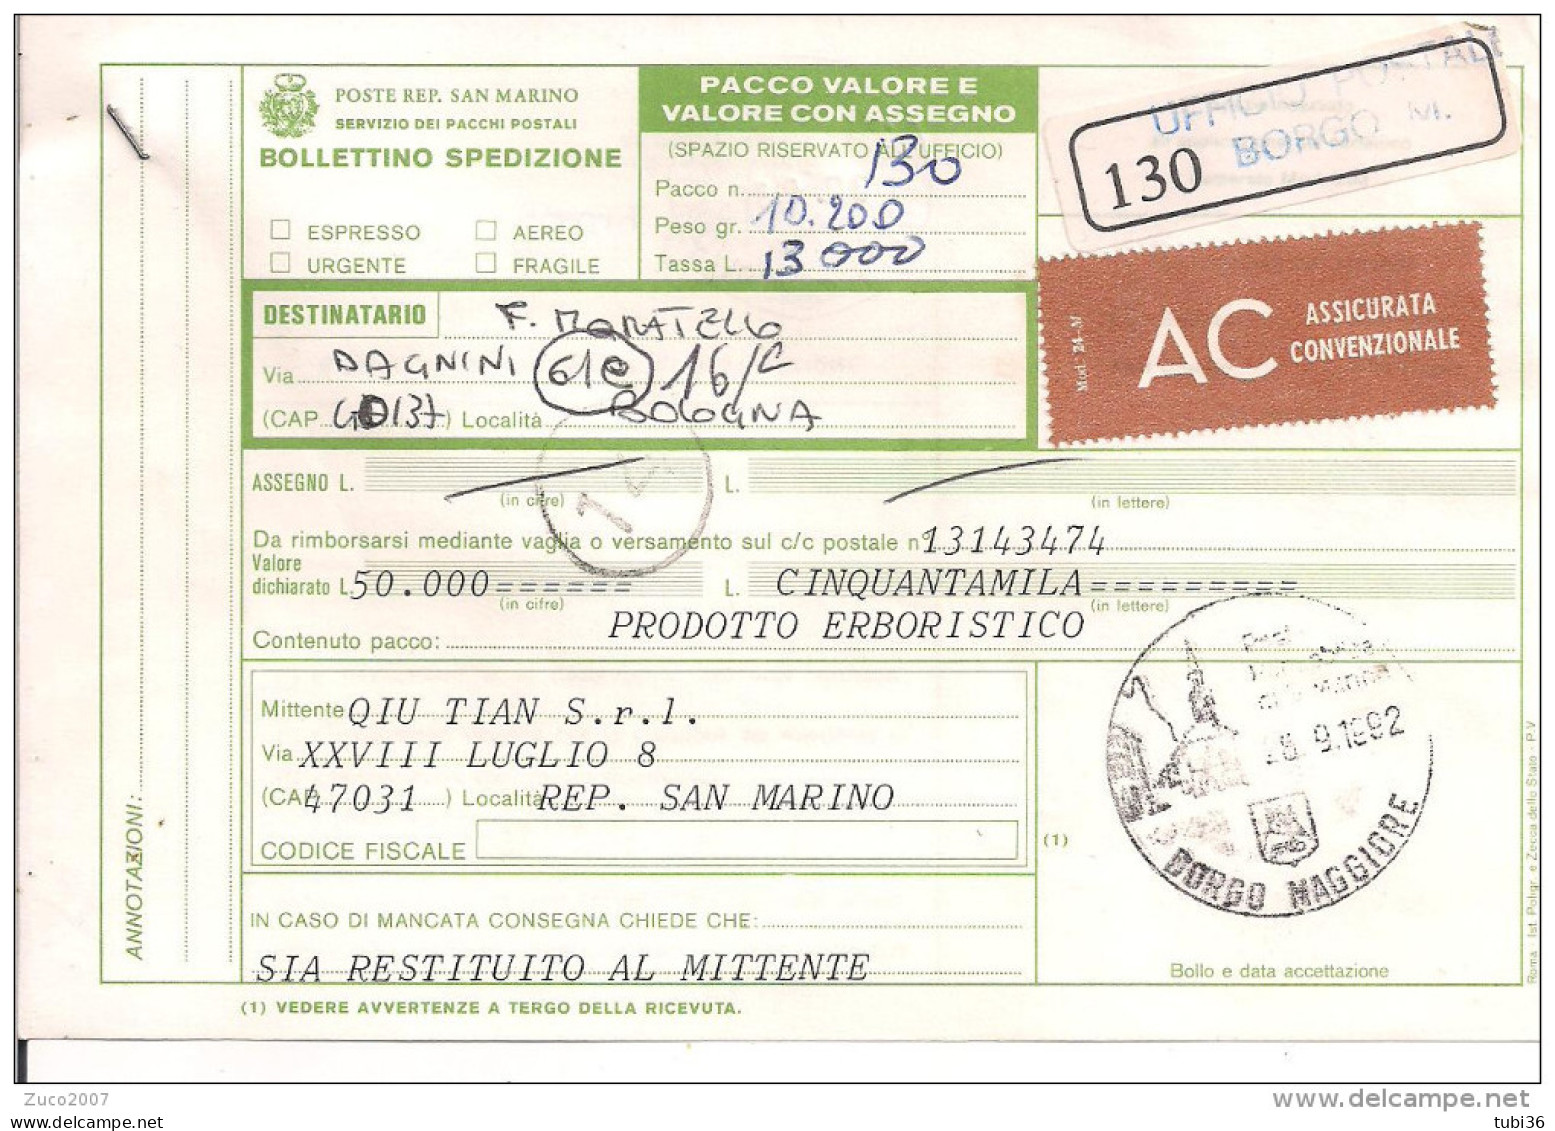 BOLLETTINO SPEDIZIONE PACCO, 1992, ASSICURATA,BORGO MAGGIORE - BOLOGNA,TASSA L.13000,COMMEMORATIVI - Spoorwegzegels